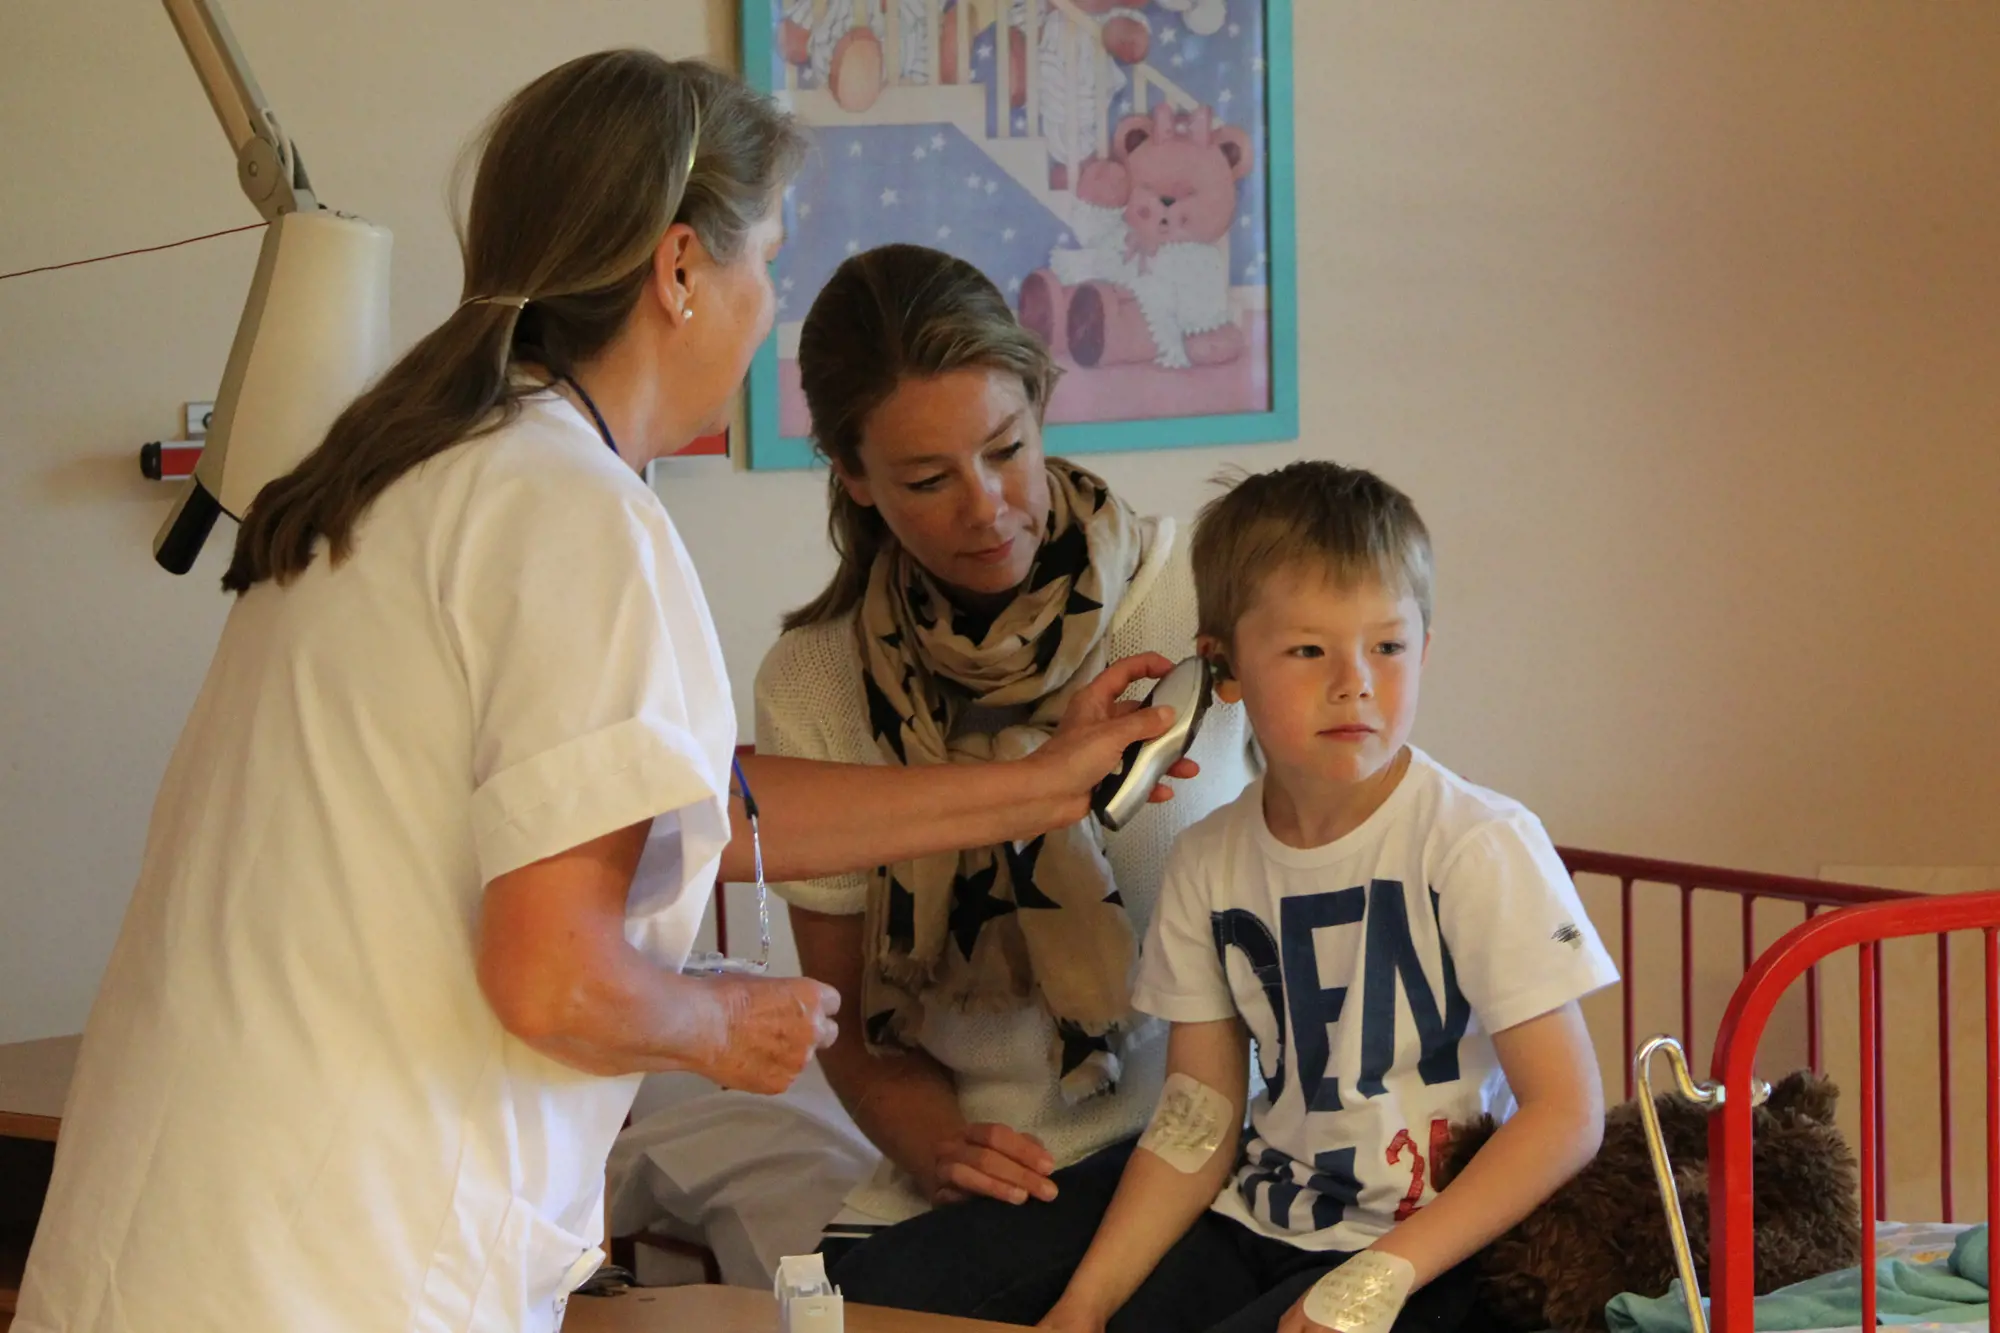 Sykepleieren måler temperaturen på Nicolai i et øre.